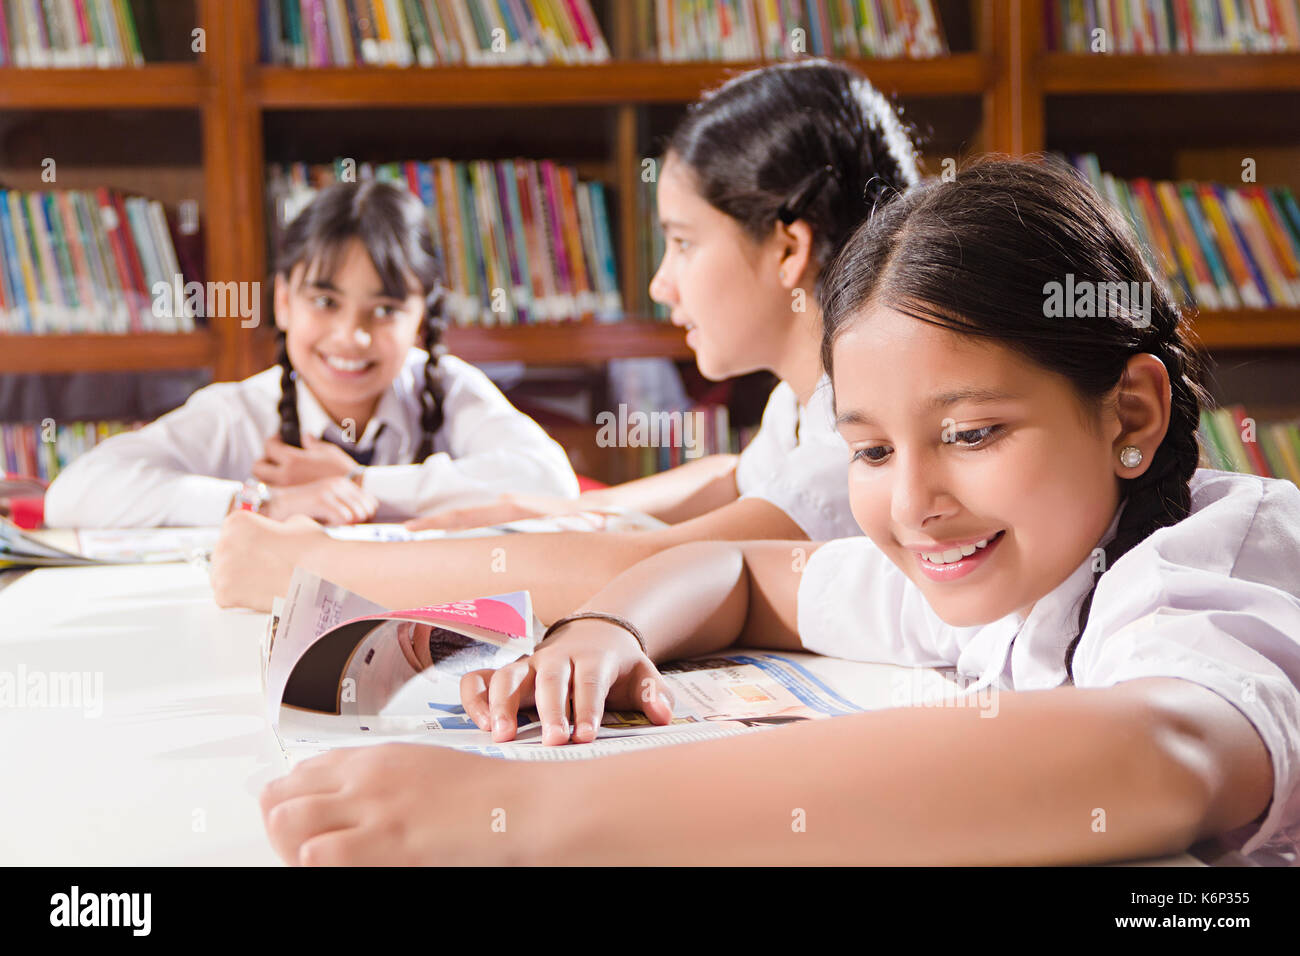 Les élèves filles de l'école indienne livre lecture éducation étude in library Banque D'Images